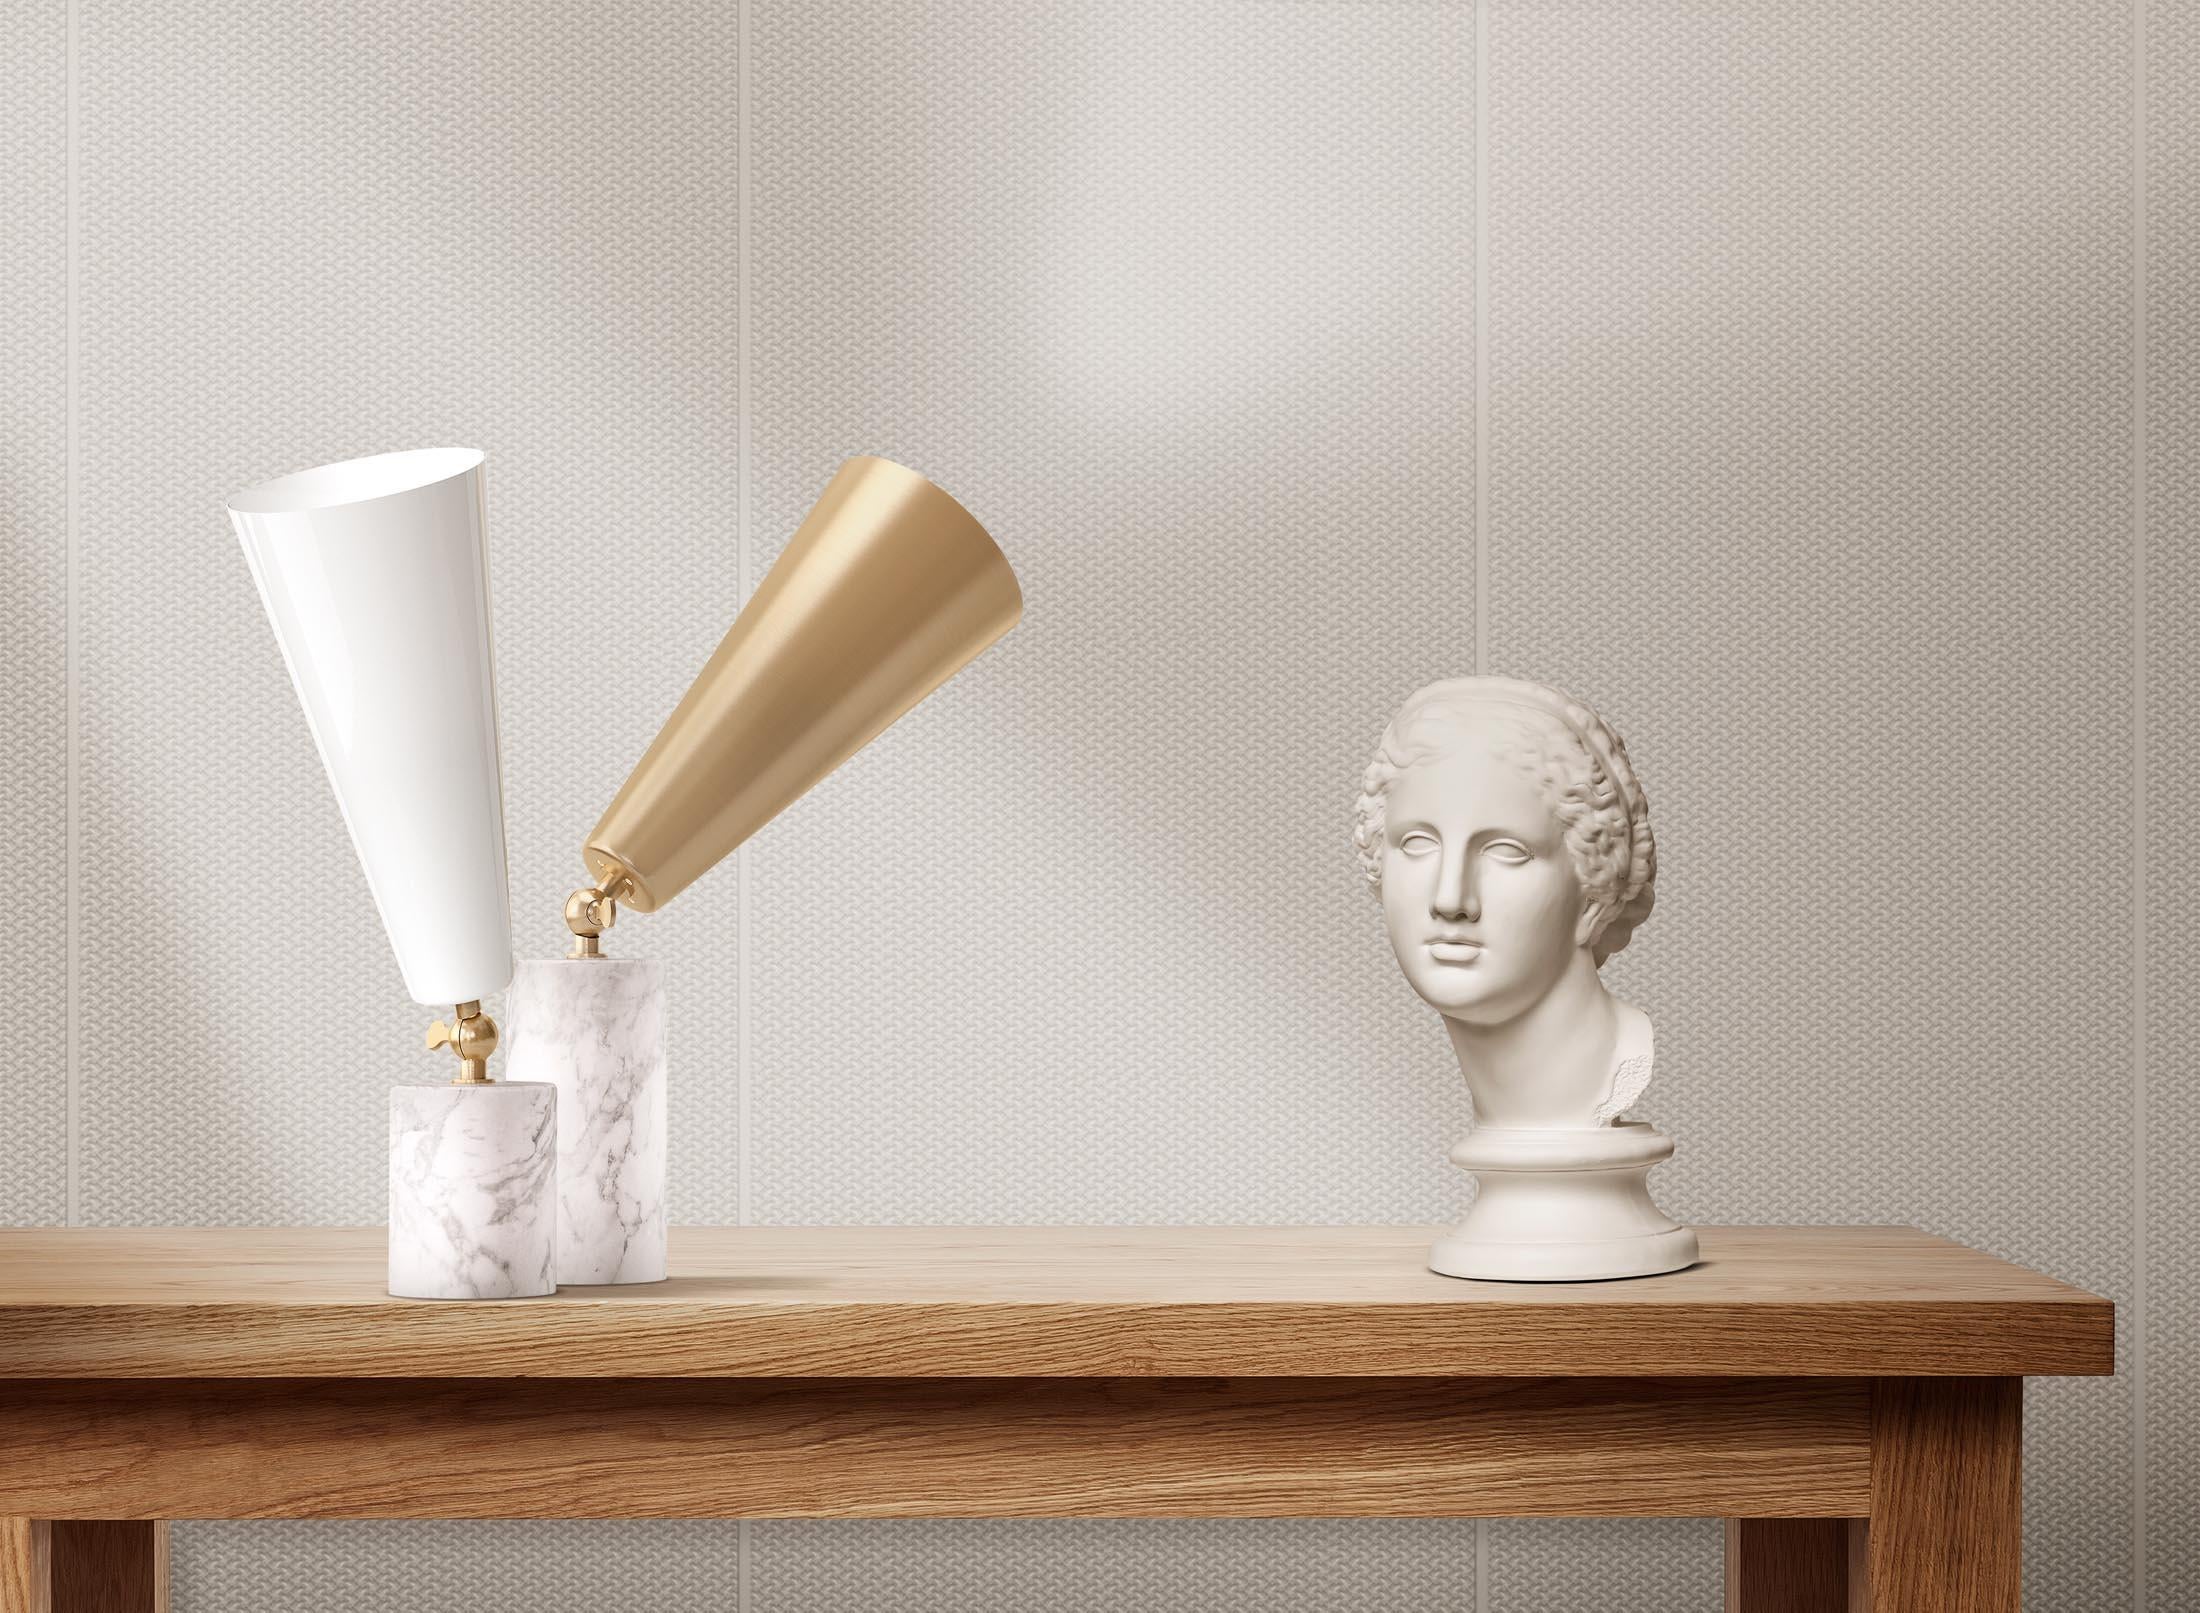 Tato Italia 'Vox' Table Lamp in Portoro Marble and Brass For Sale 3